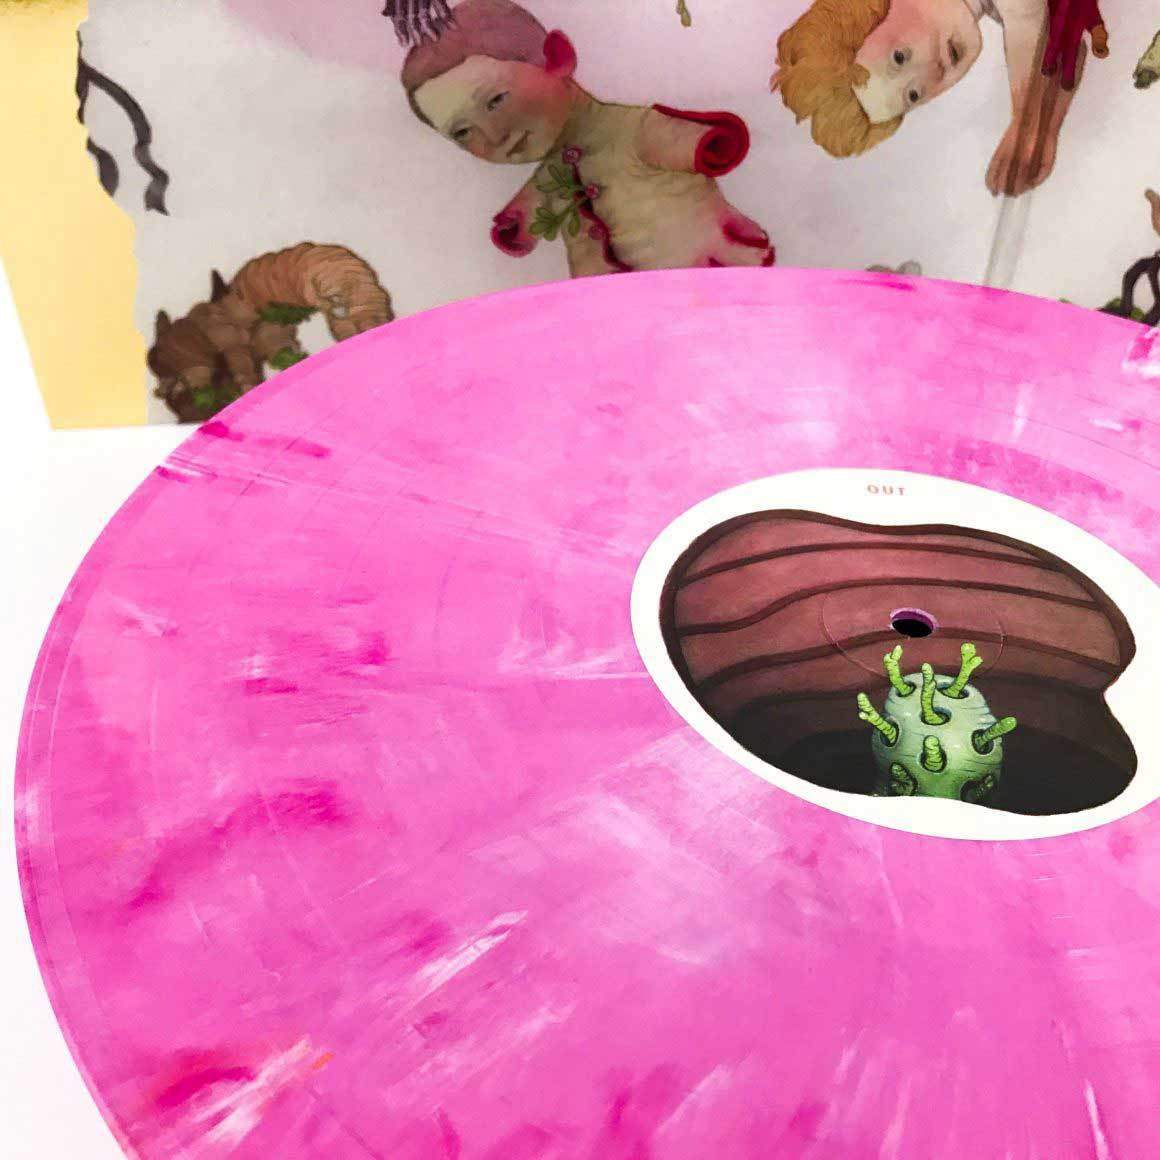 Vol. 021: Pink Portals – VINYL MOON